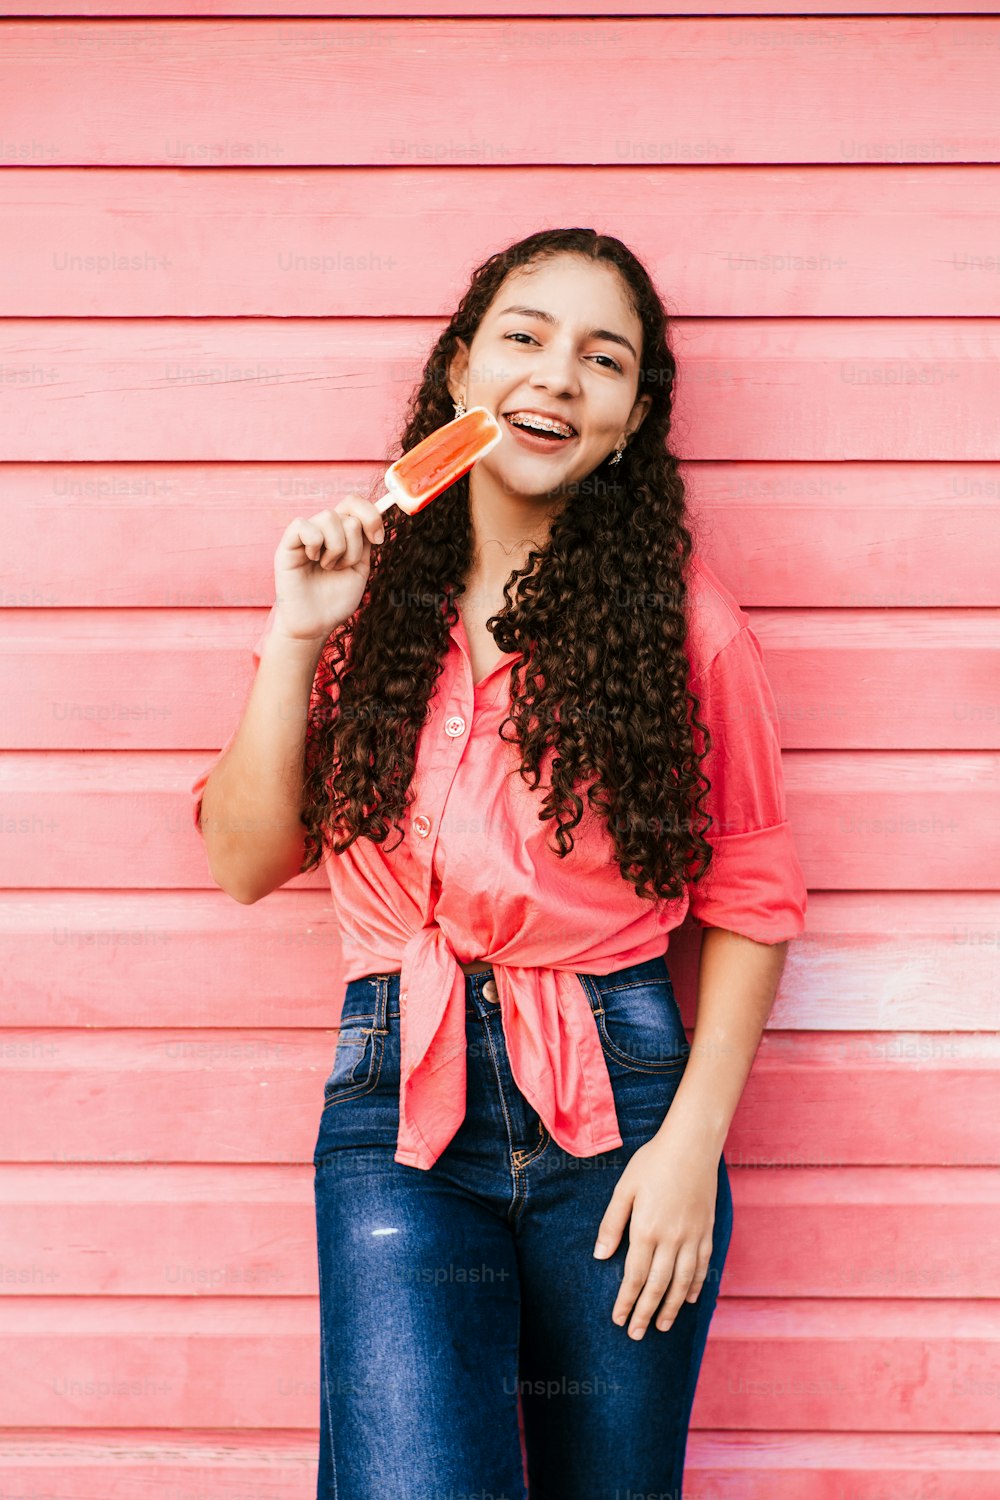 아이스 캔디를 먹는 라틴 소녀의 수직 초상화